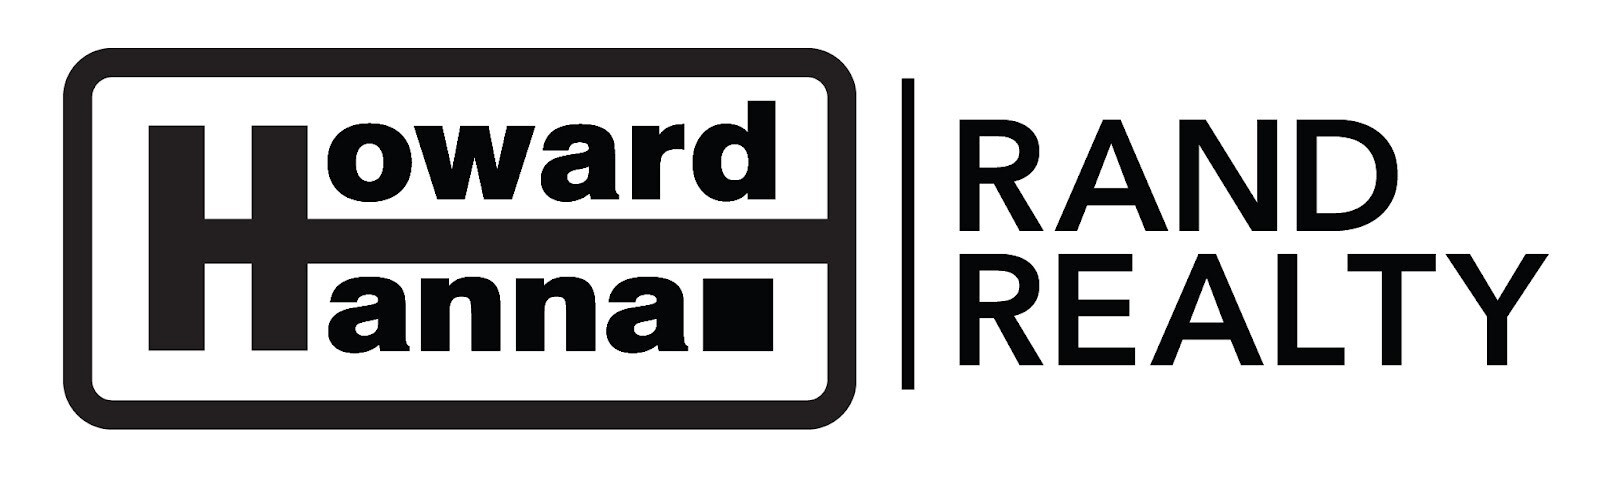 Howard Hanna Rand Realty - Black